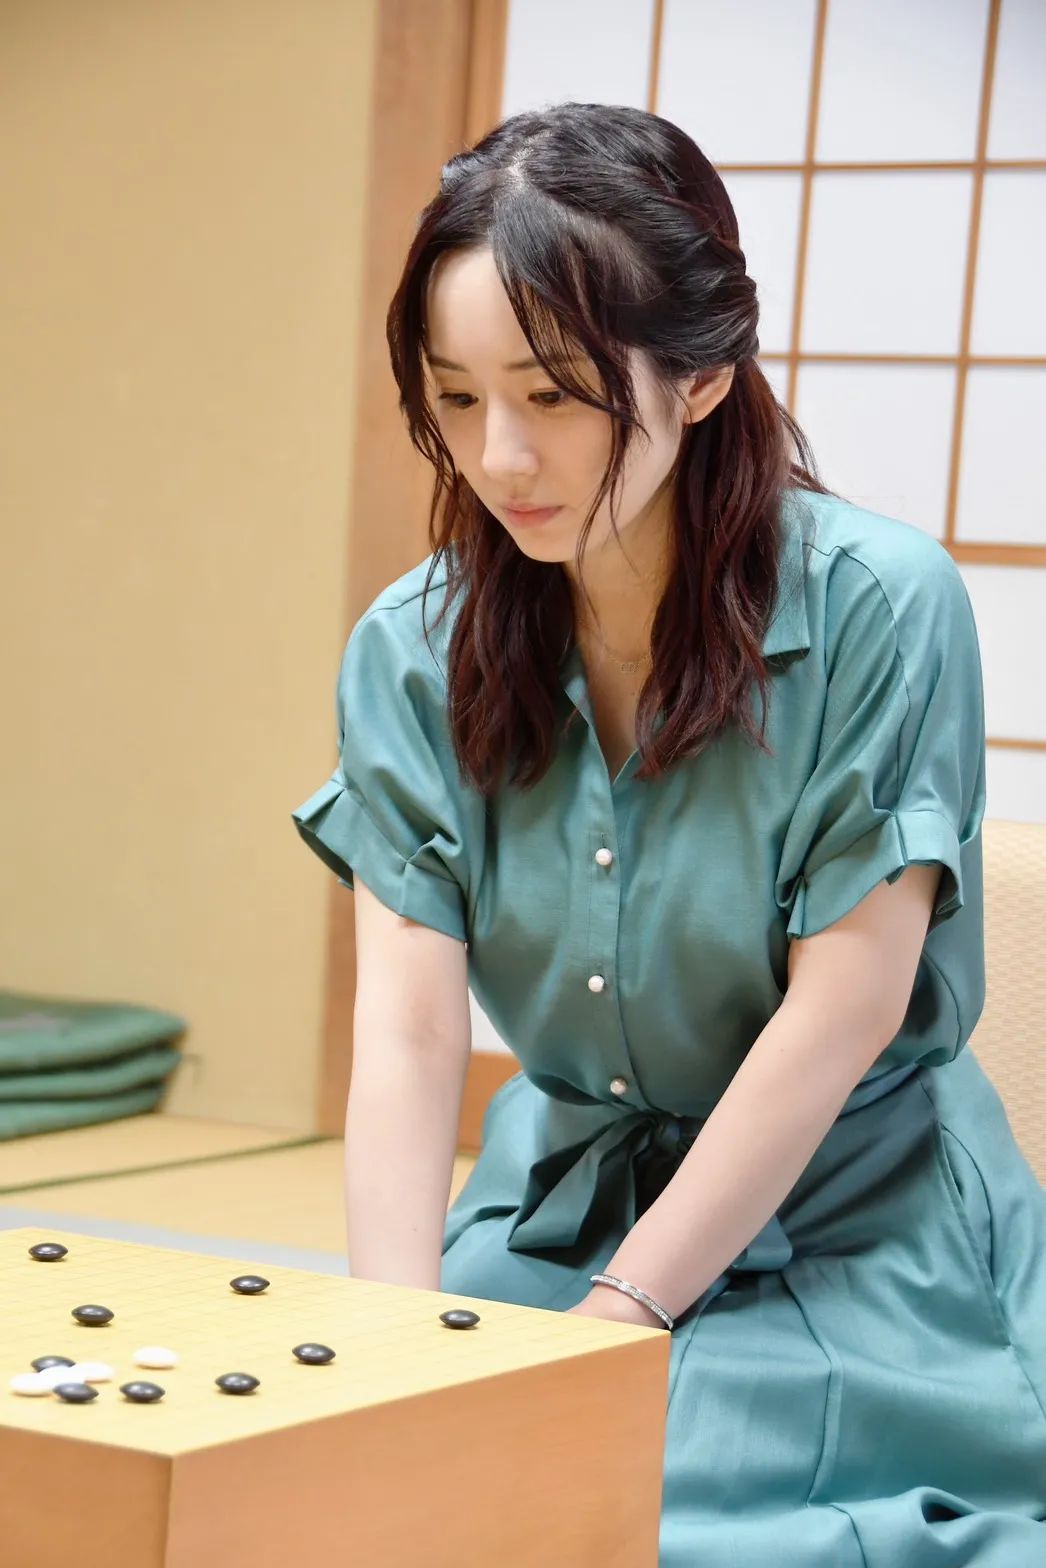 日本女声优「照井春佳」宣布结婚，对象是棋手平田智也。_图片 No.11